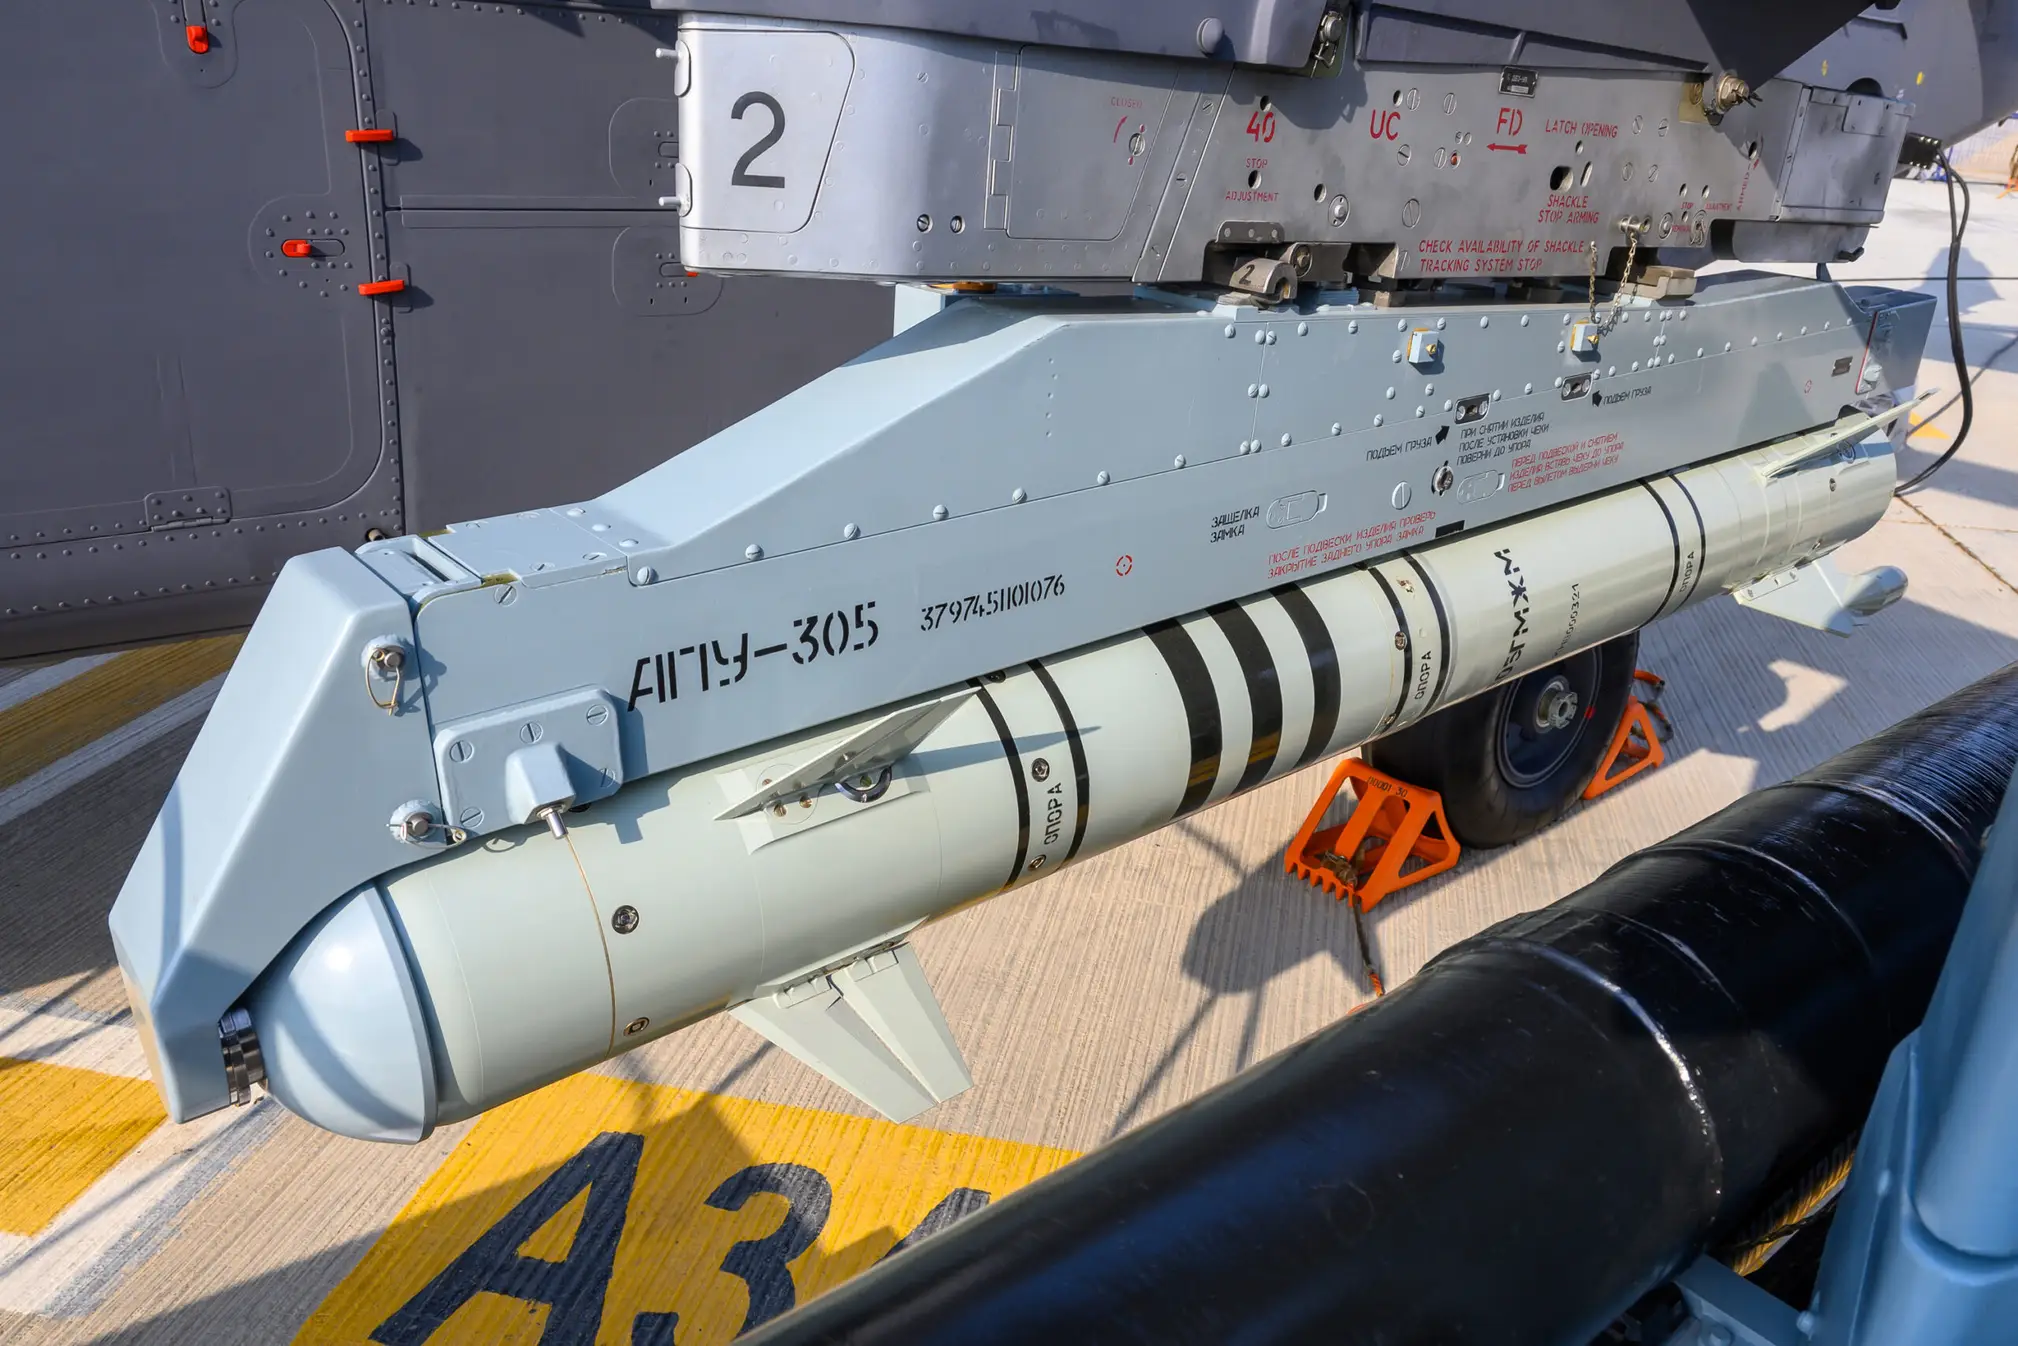 05-lmur-305-ul-practice-missile-on-apu-305-railcpiotr-butowski-scaled.jpg